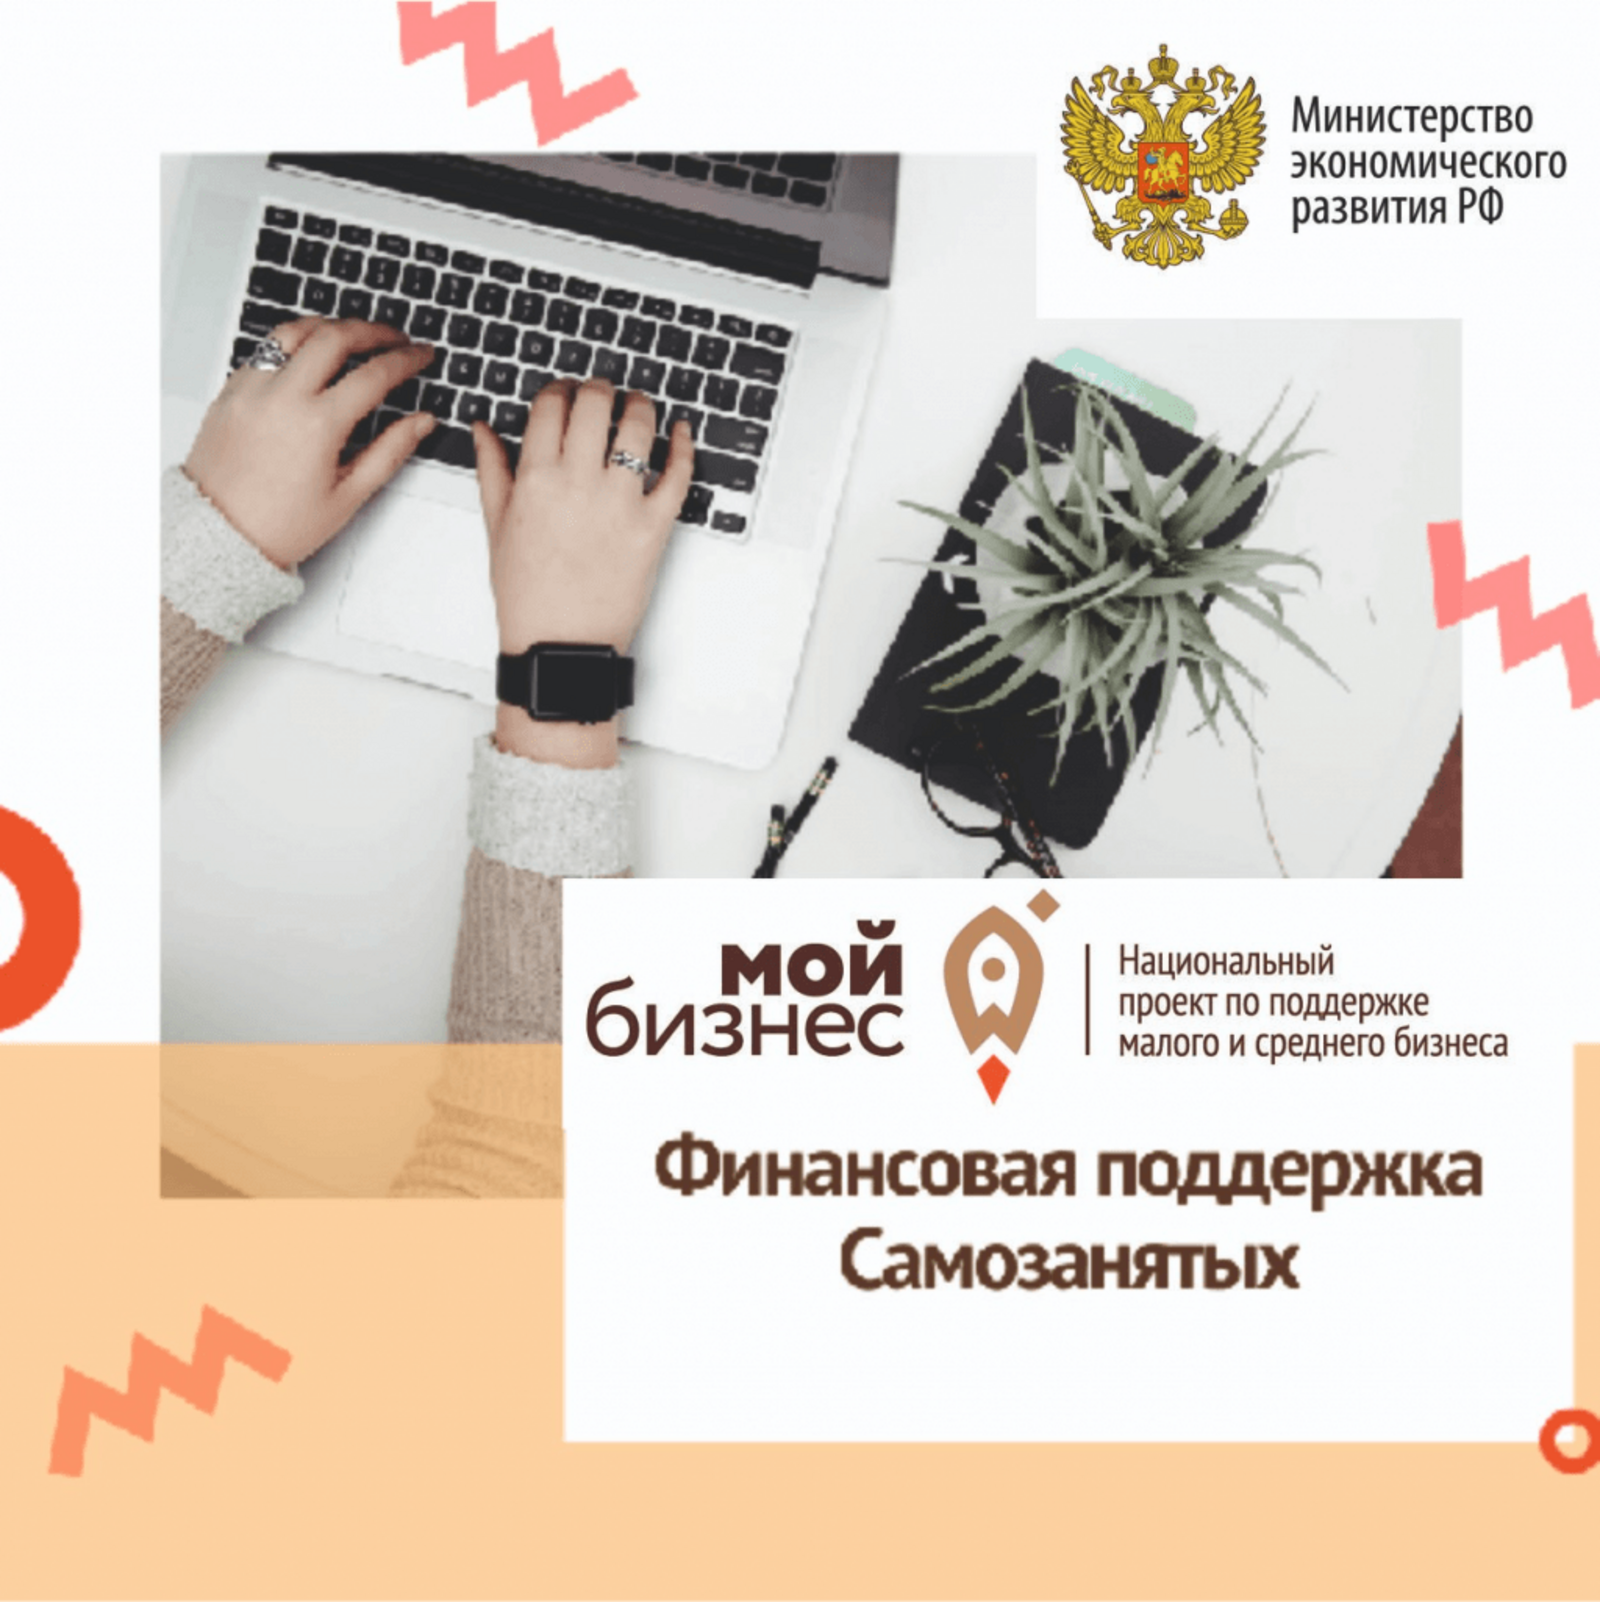 Республика Башкортостан вошла в состав лучших регионов России по предоставлению микрокредитной поддержки самозанятым